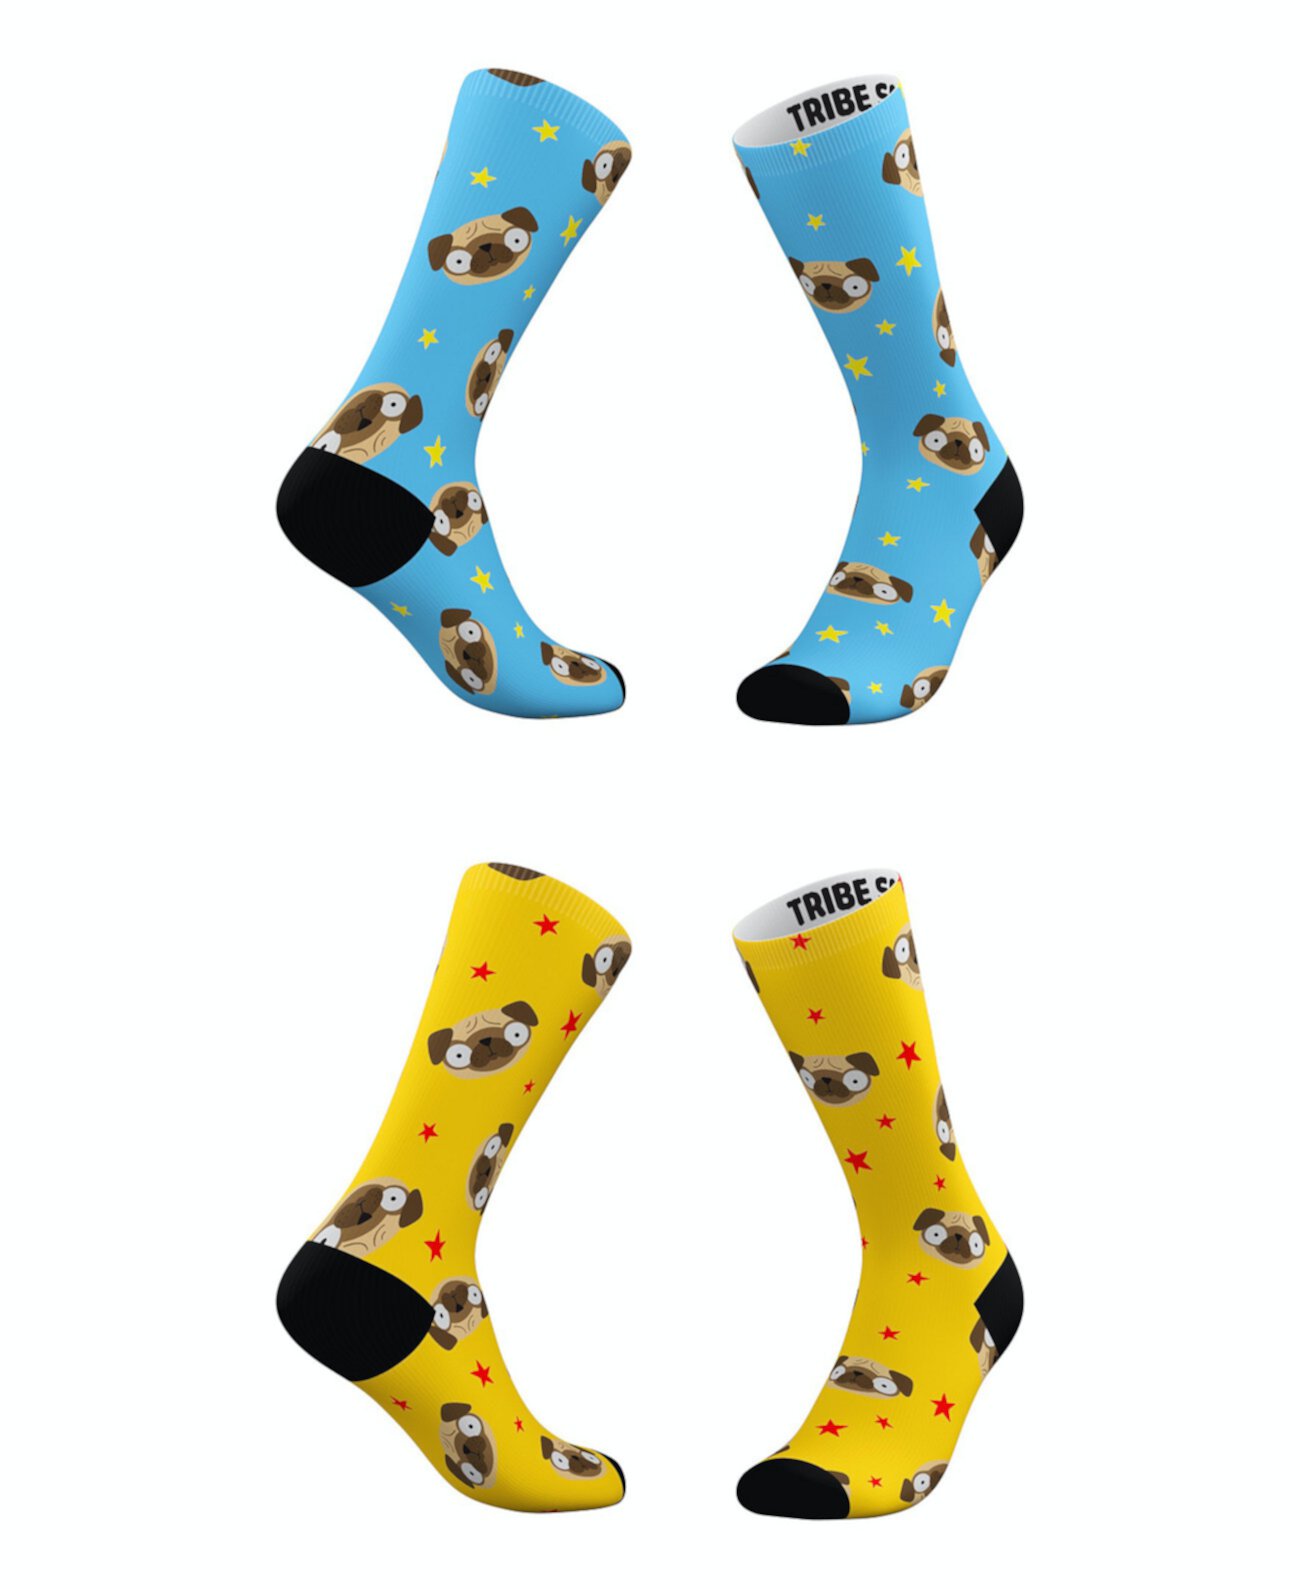 Мужские и женские носки Pugmoji, набор из 2 шт. Tribe Socks